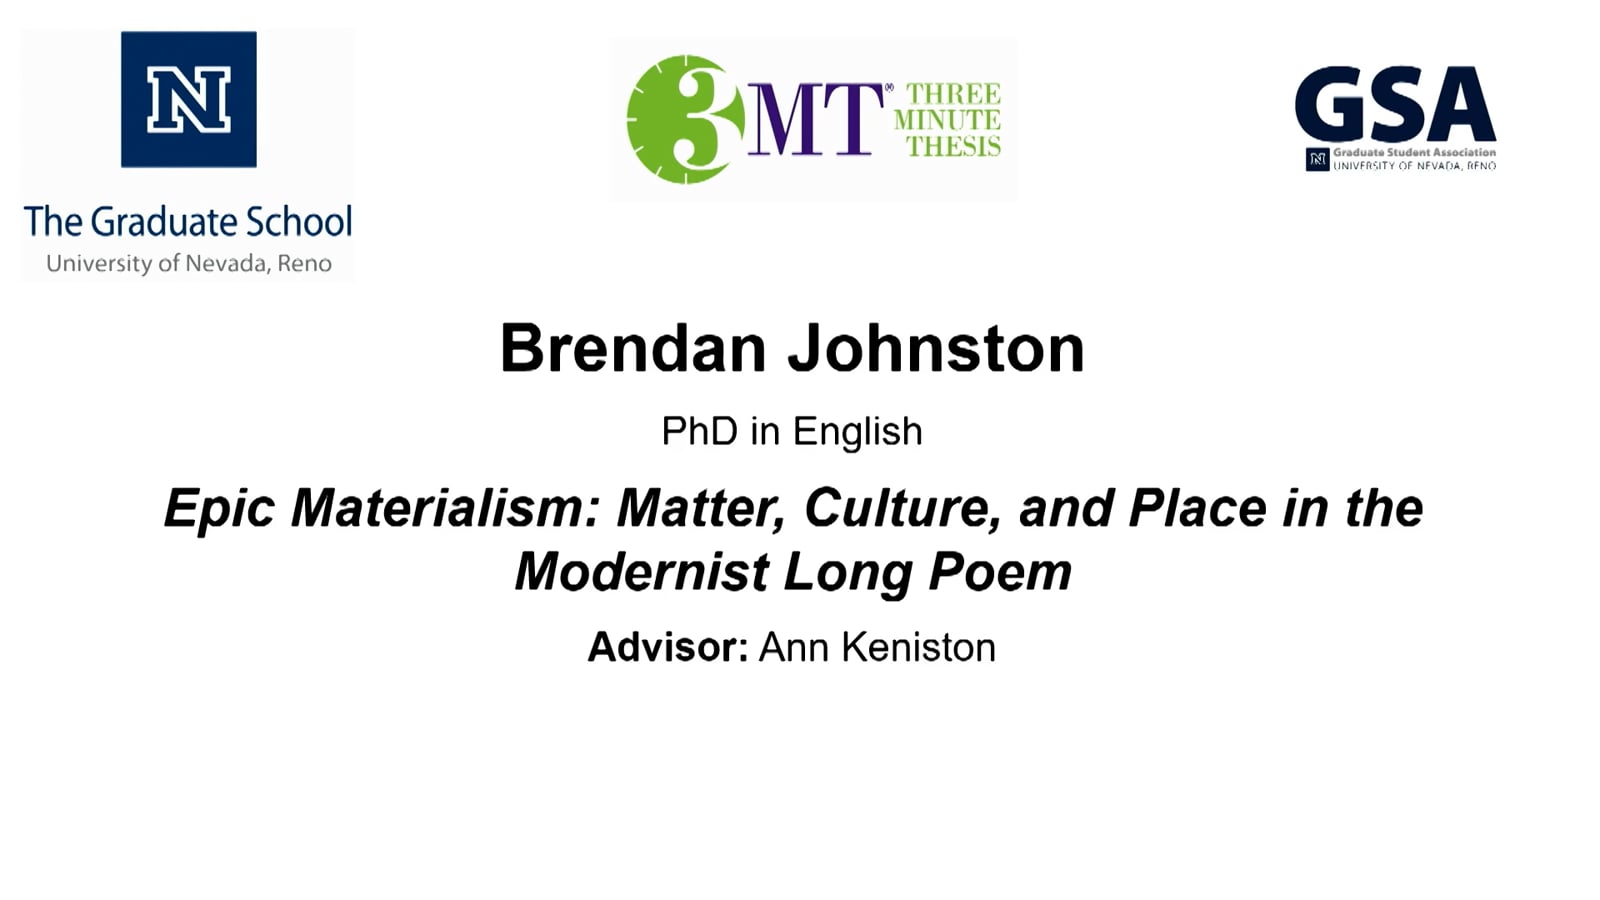 Thumbnail of Brendan Johnston's slide